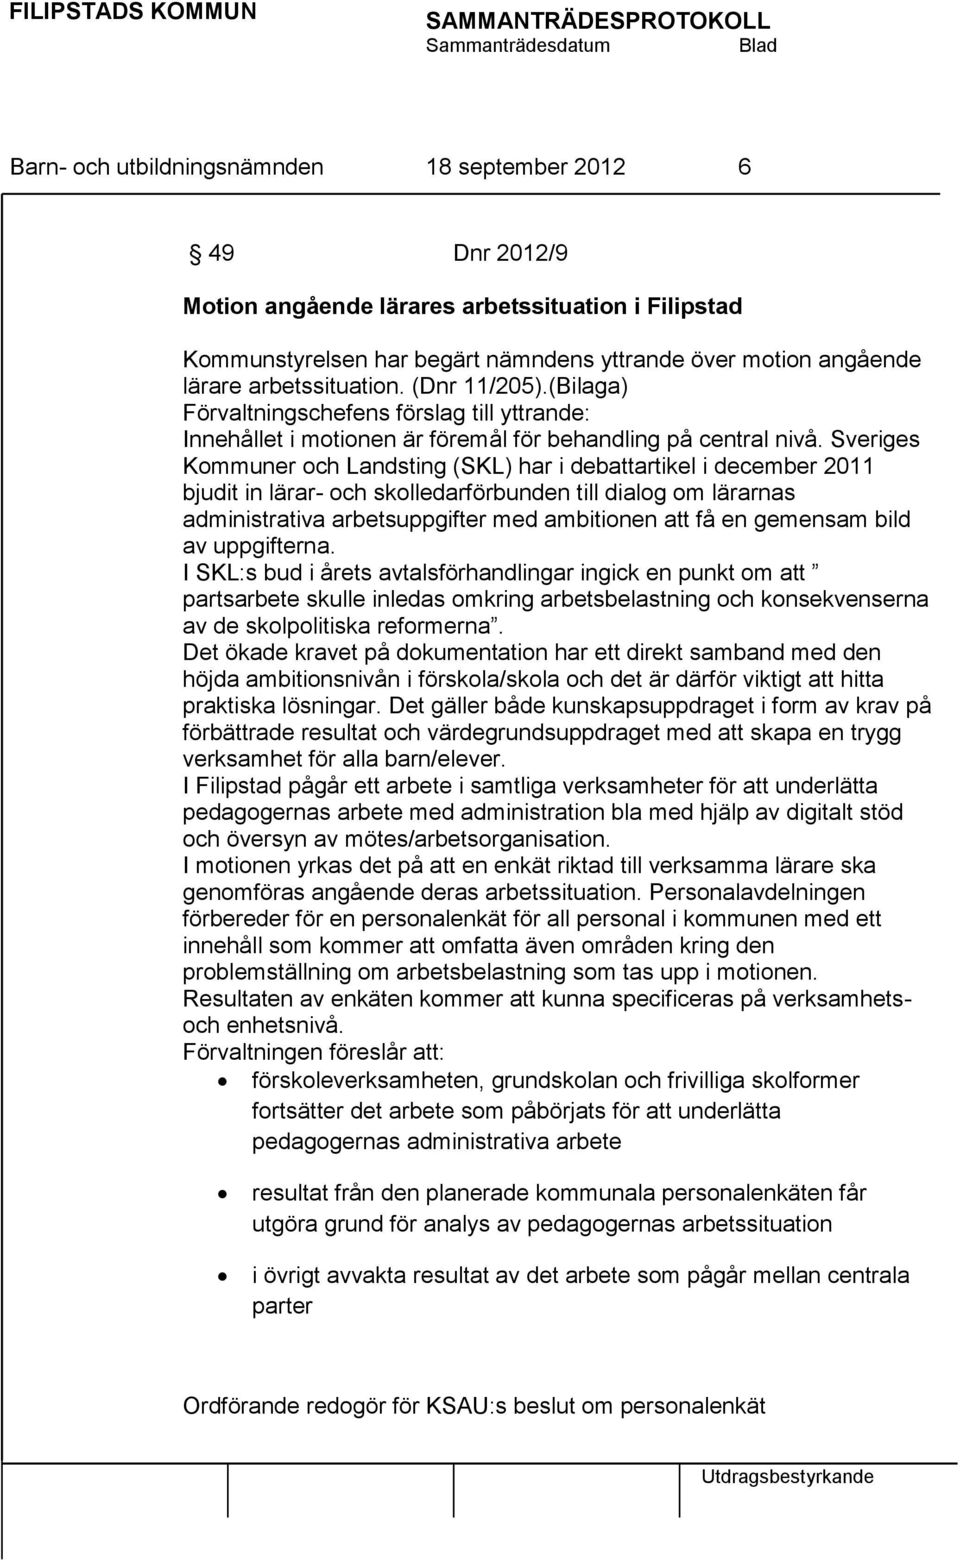 Sveriges Kommuner och Landsting (SKL) har i debattartikel i december 2011 bjudit in lärar- och skolledarförbunden till dialog om lärarnas administrativa arbetsuppgifter med ambitionen att få en